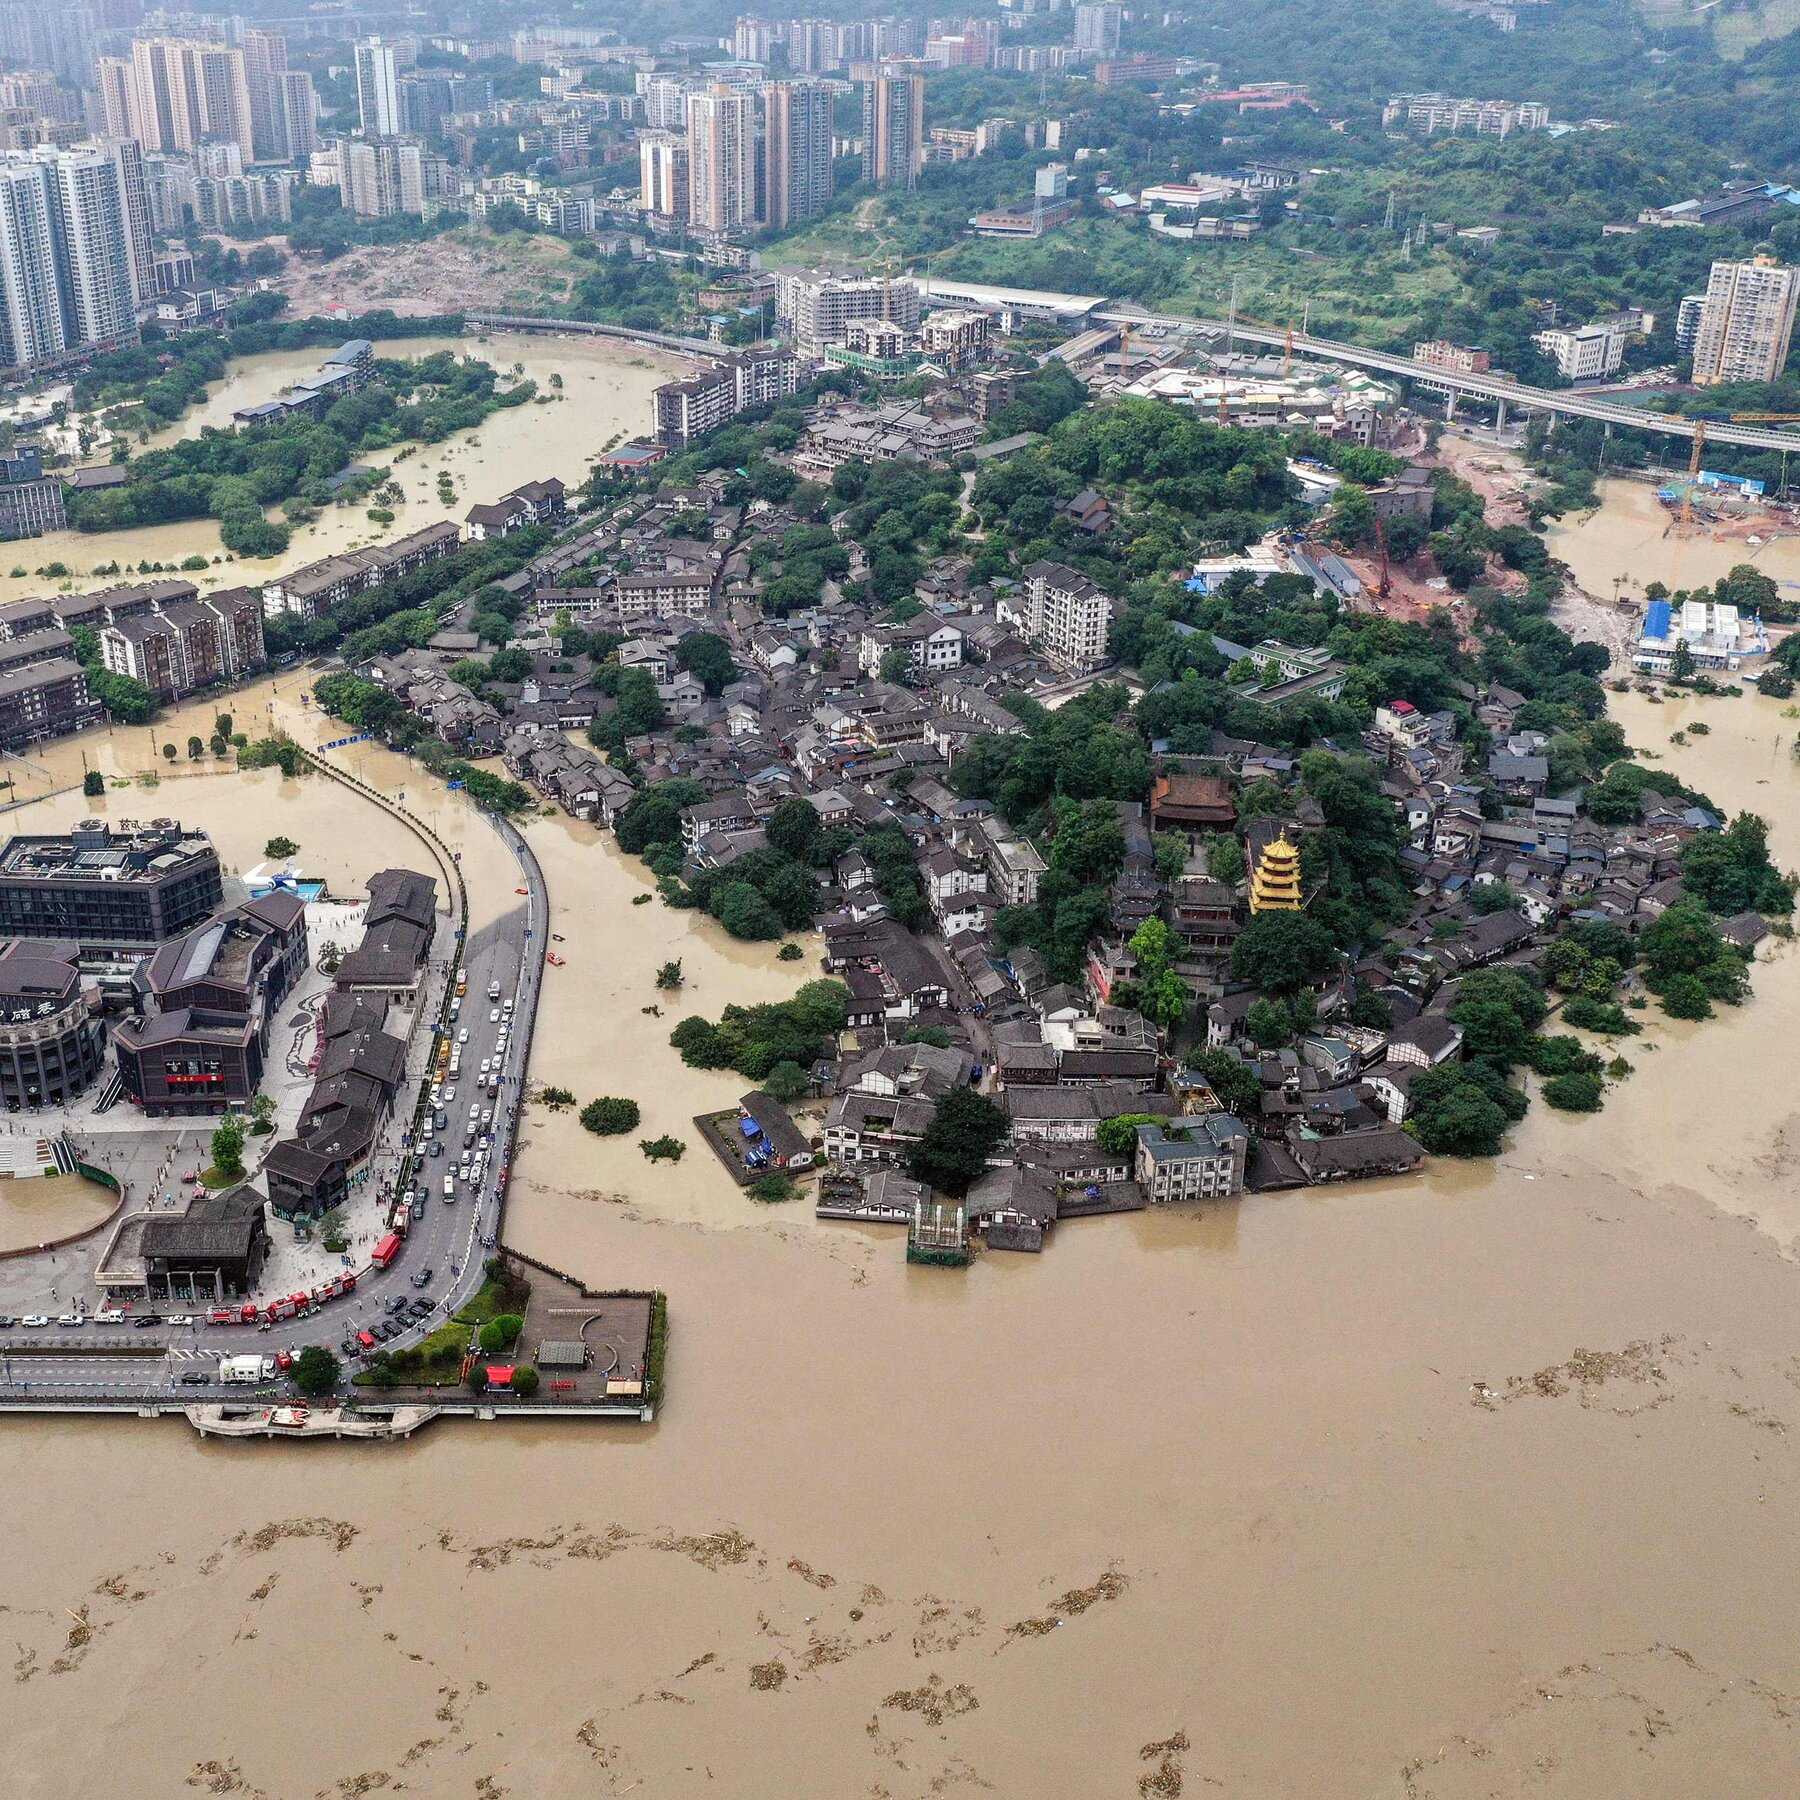 Gawat Banjir Tewaskan 15 Orang, Terjadi di Wilayah Batubara China Setelah Hujan Lebat